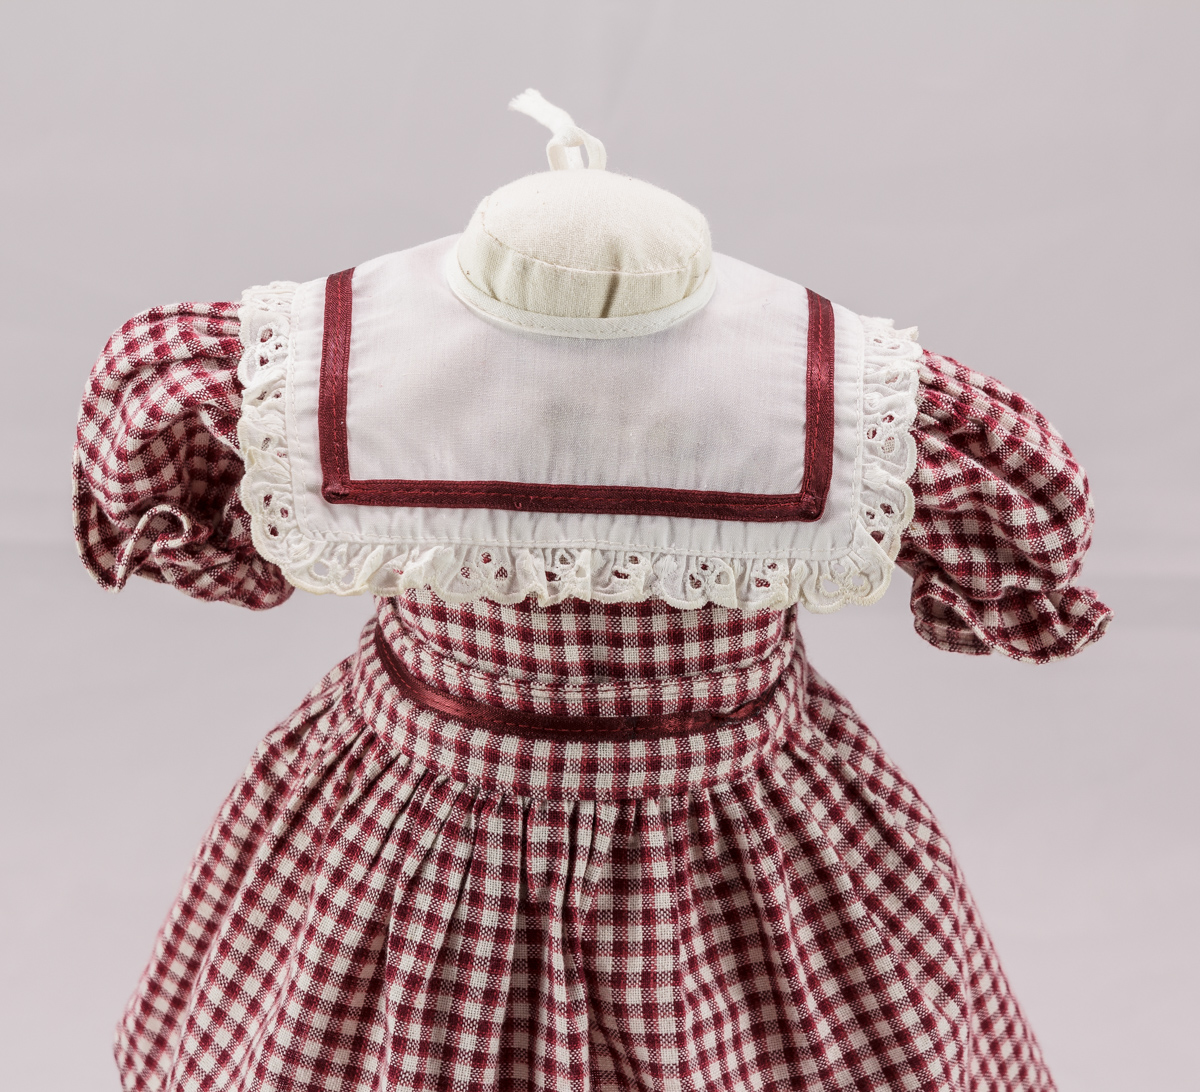 Puppenkragen zu dem karierten Puppenkleid (Inv. Nr. 6270) (Stadtmuseum Lippstadt RR-F)